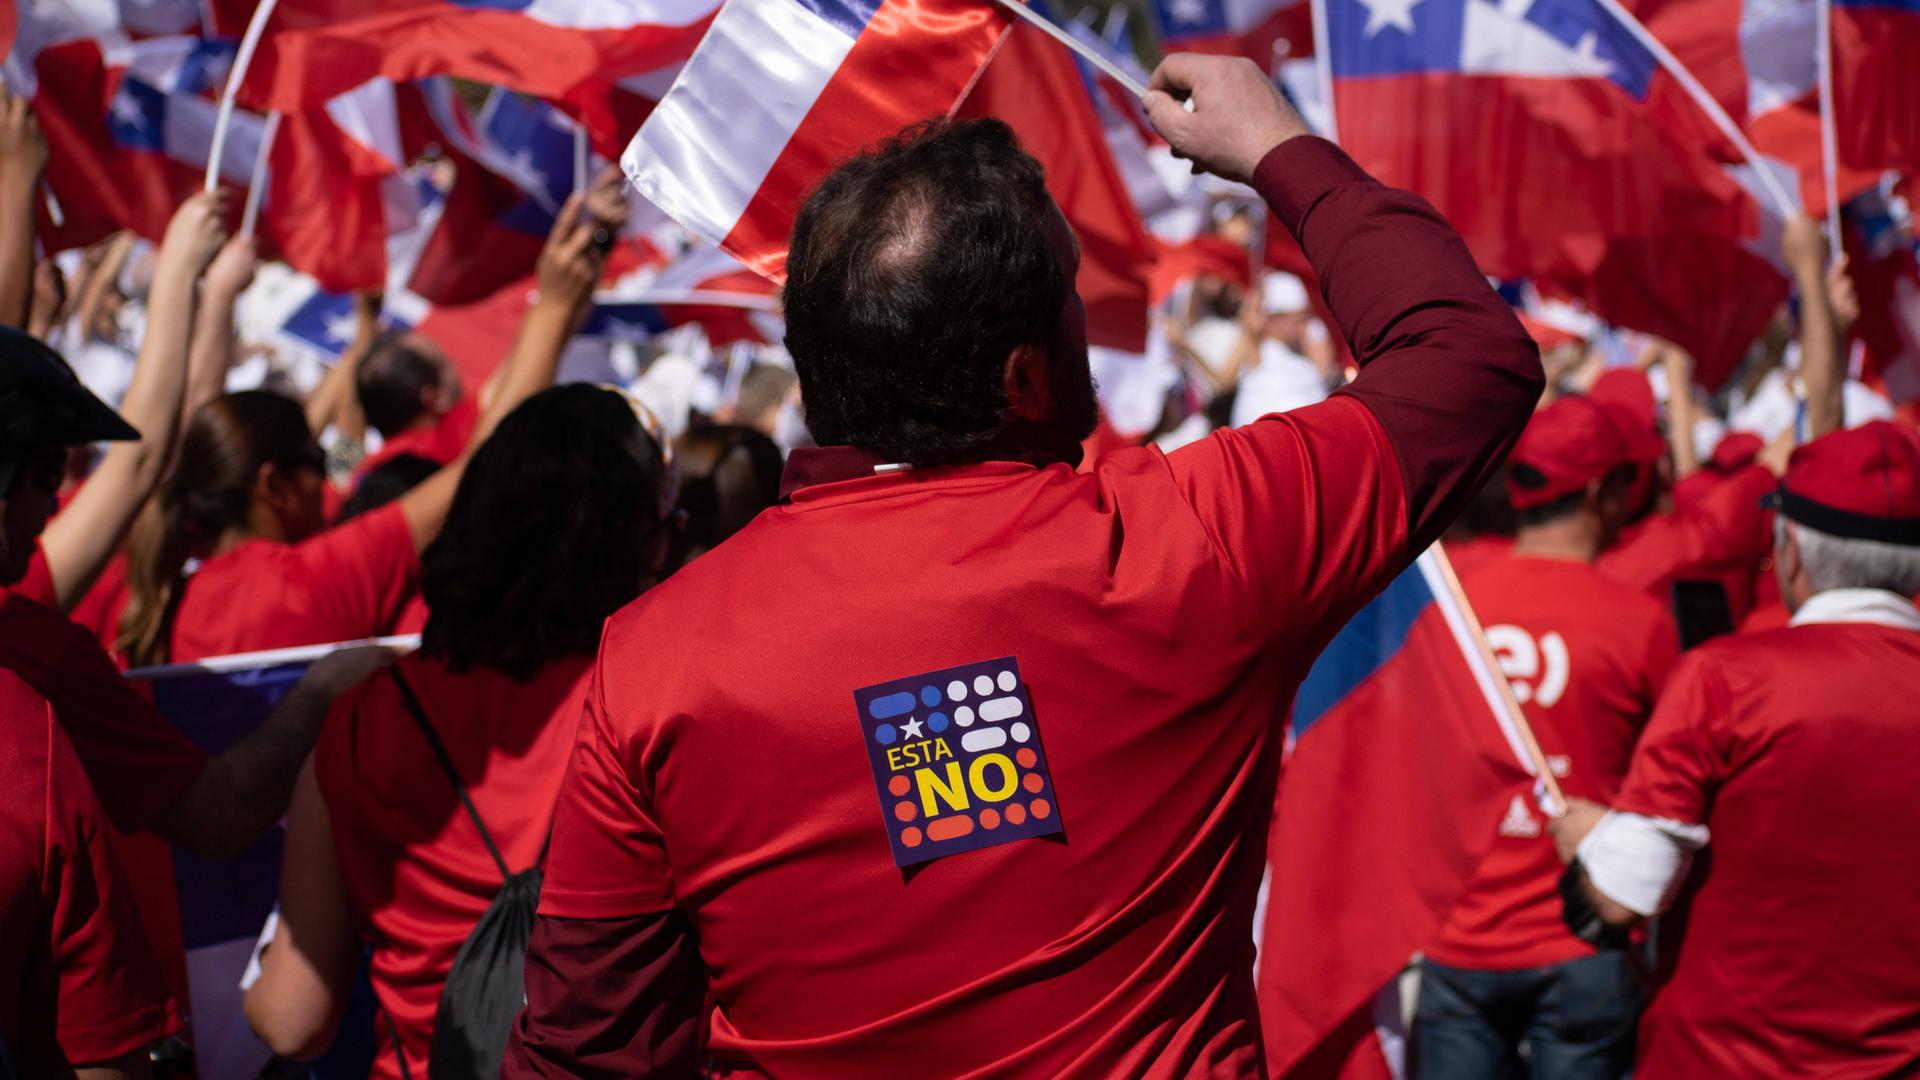 Viele Menschen mit chilenischen Fahnen und roten T-Shirts auf denen hinten "Nein" steht versammeln sich in großen Ansammlungen.